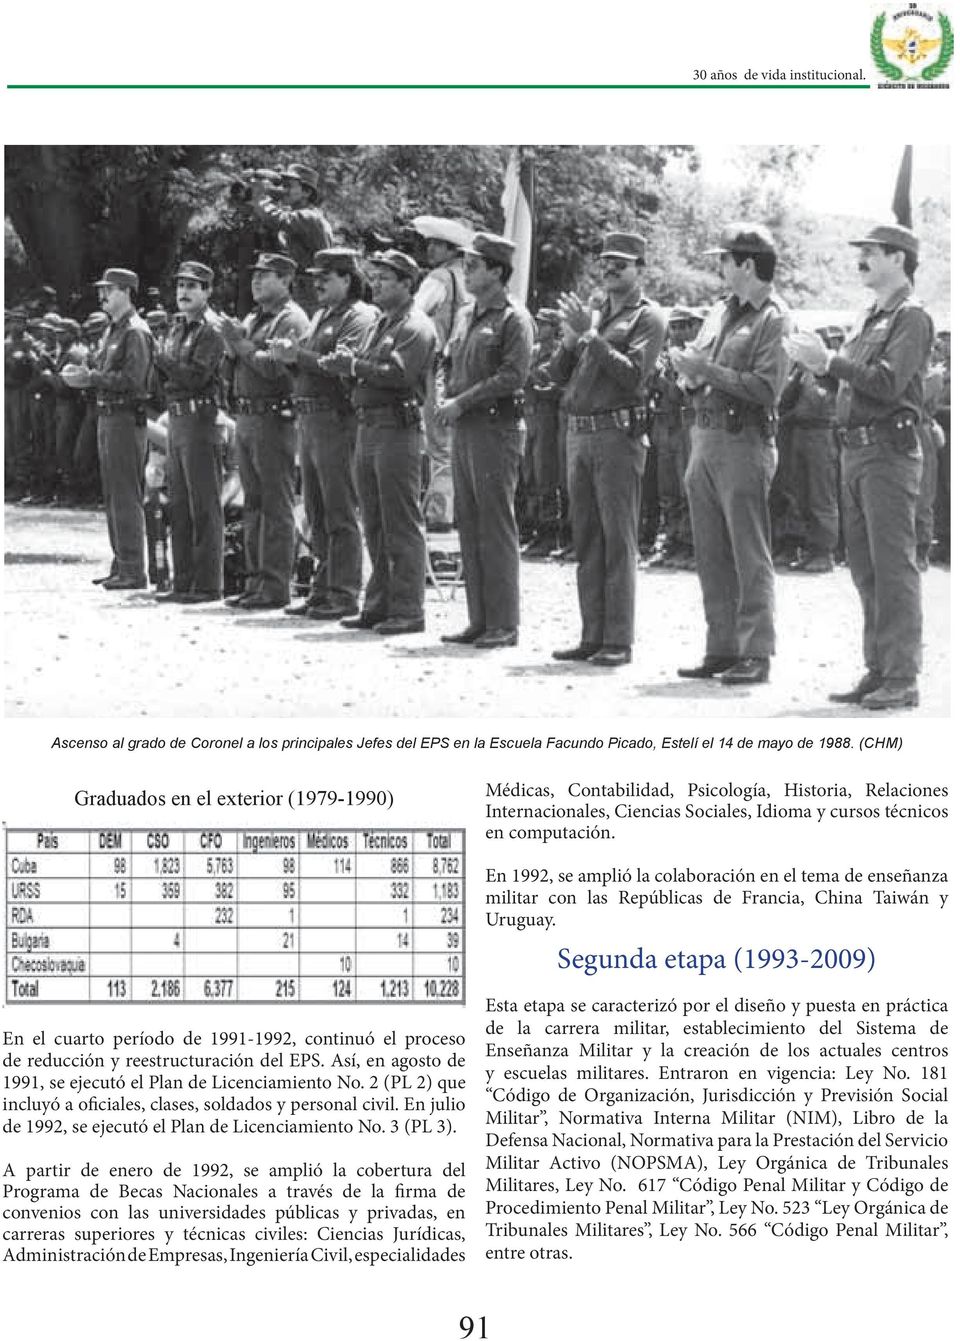 En 1992, se amplió la colaboración en el tema de enseñanza militar con las Repúblicas de Francia, China Taiwán y Uruguay.